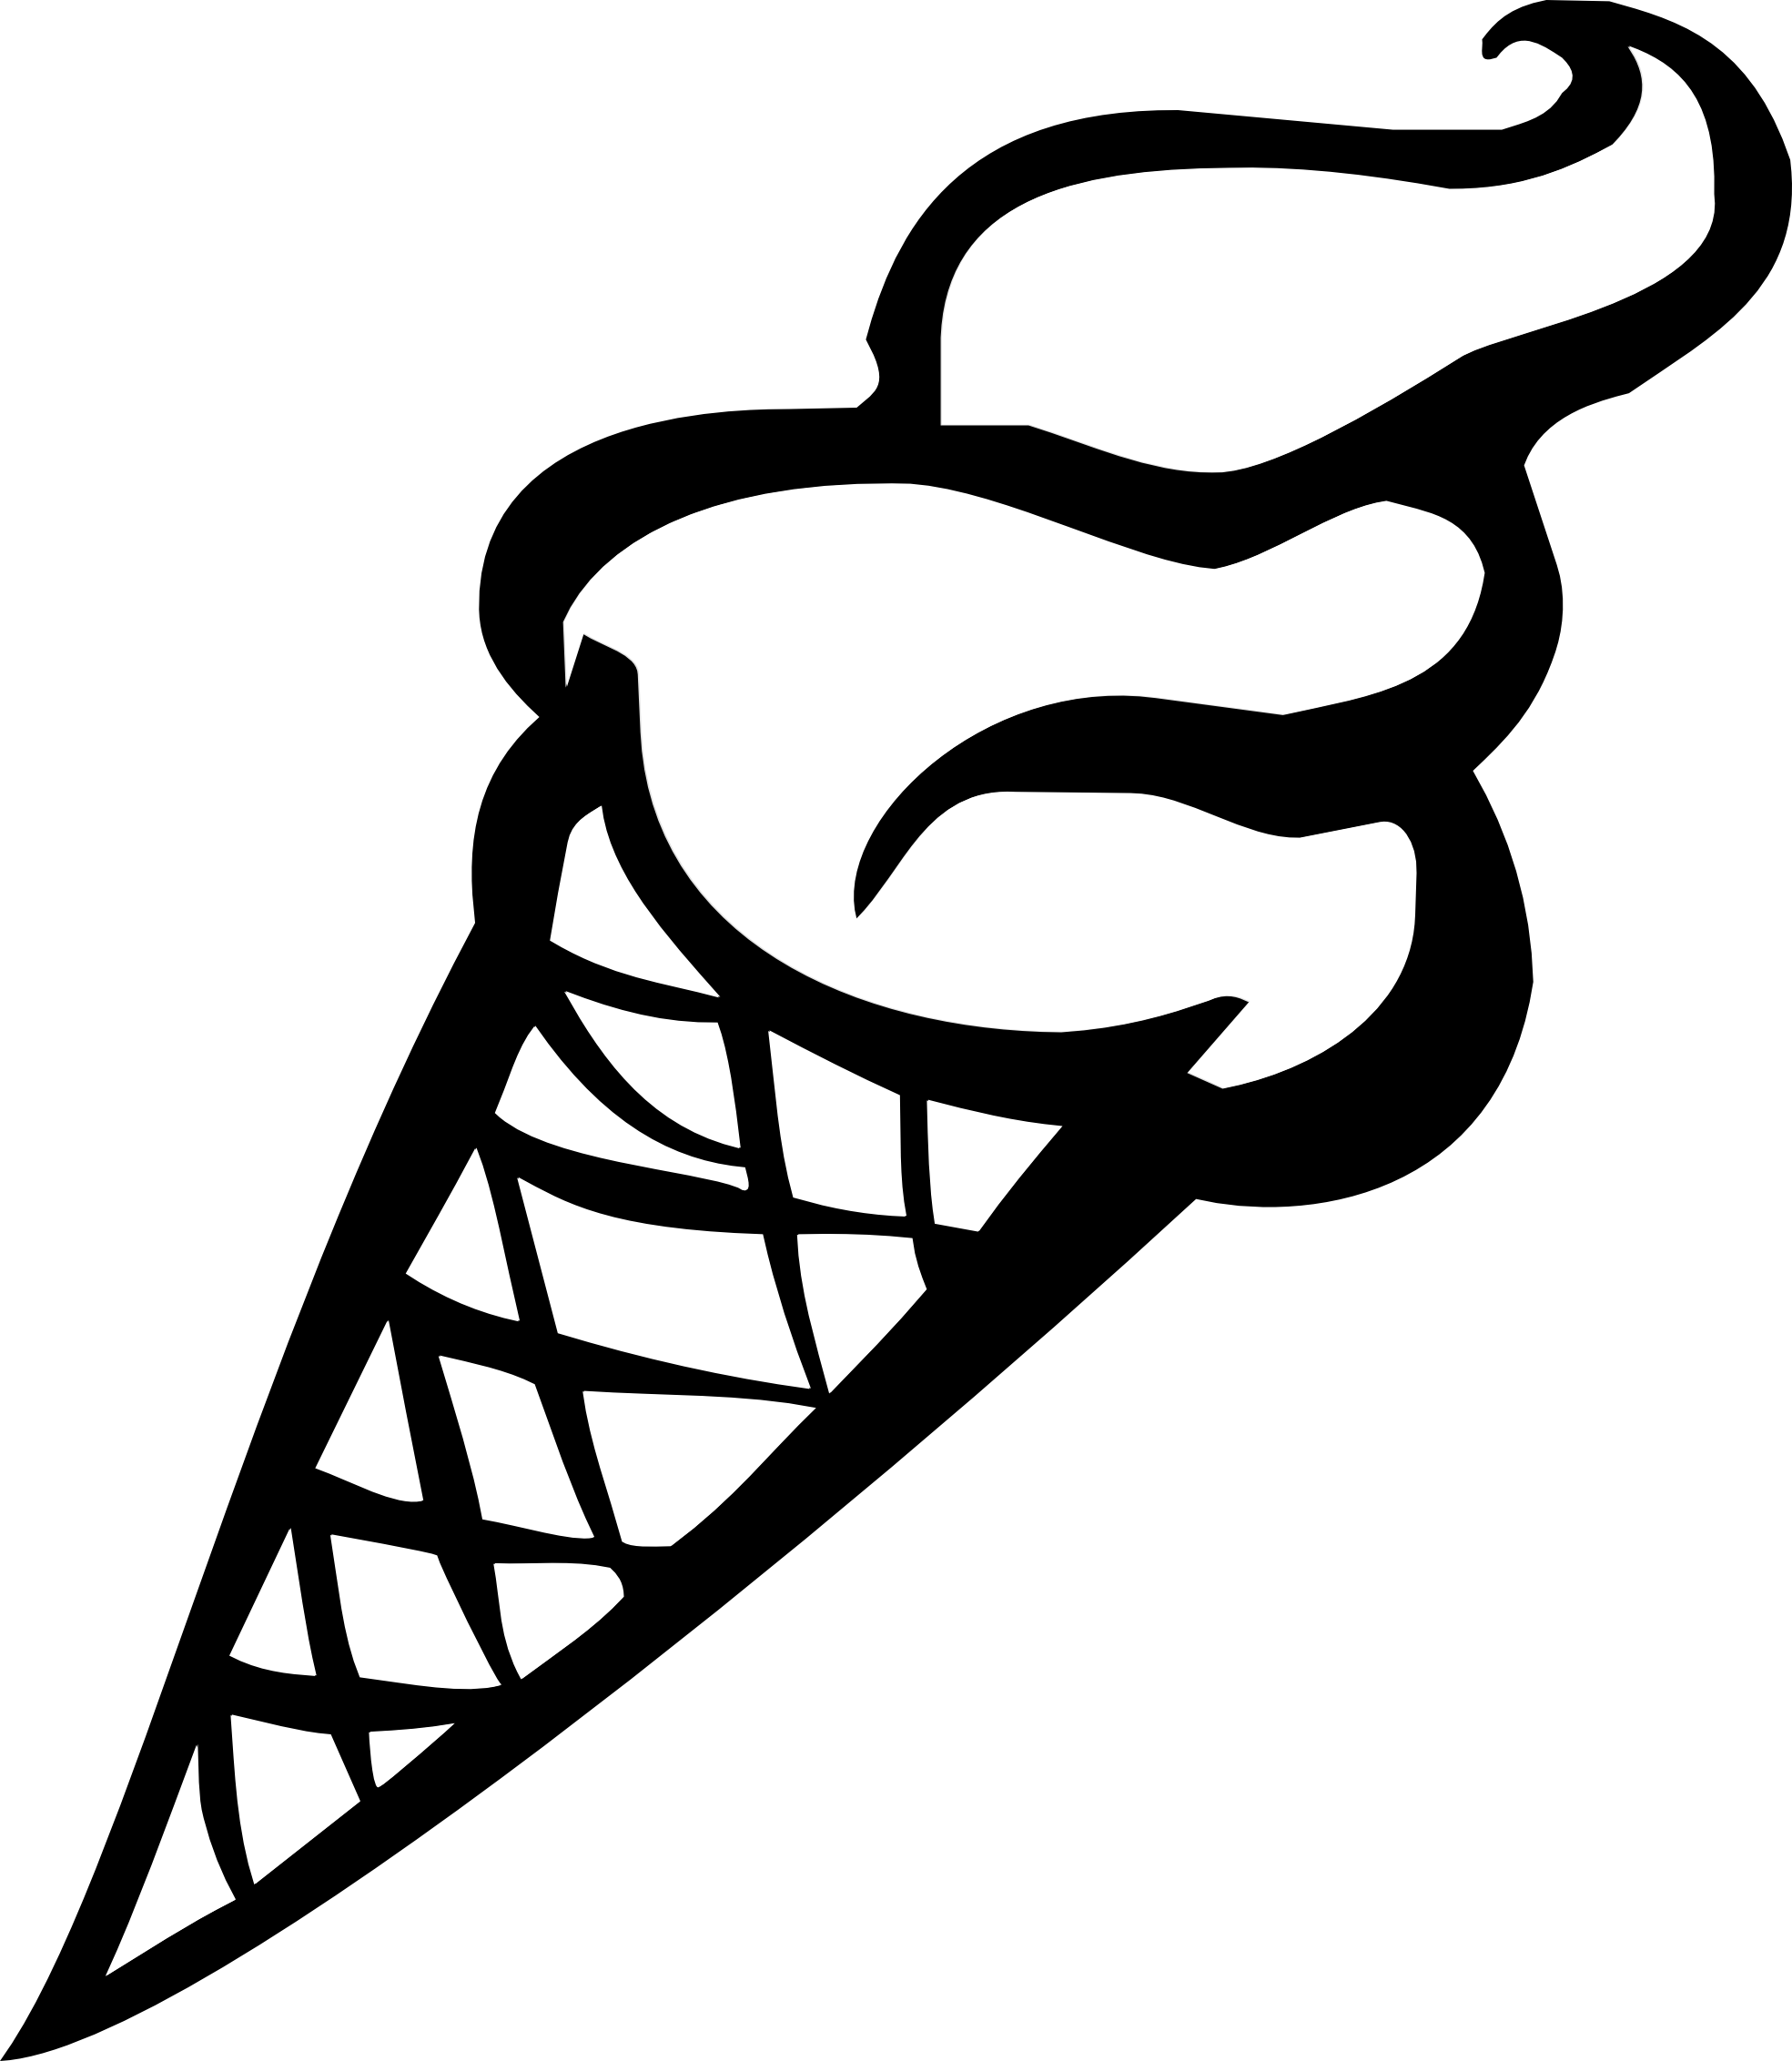 Ice cream cone ice cream3 image #2149